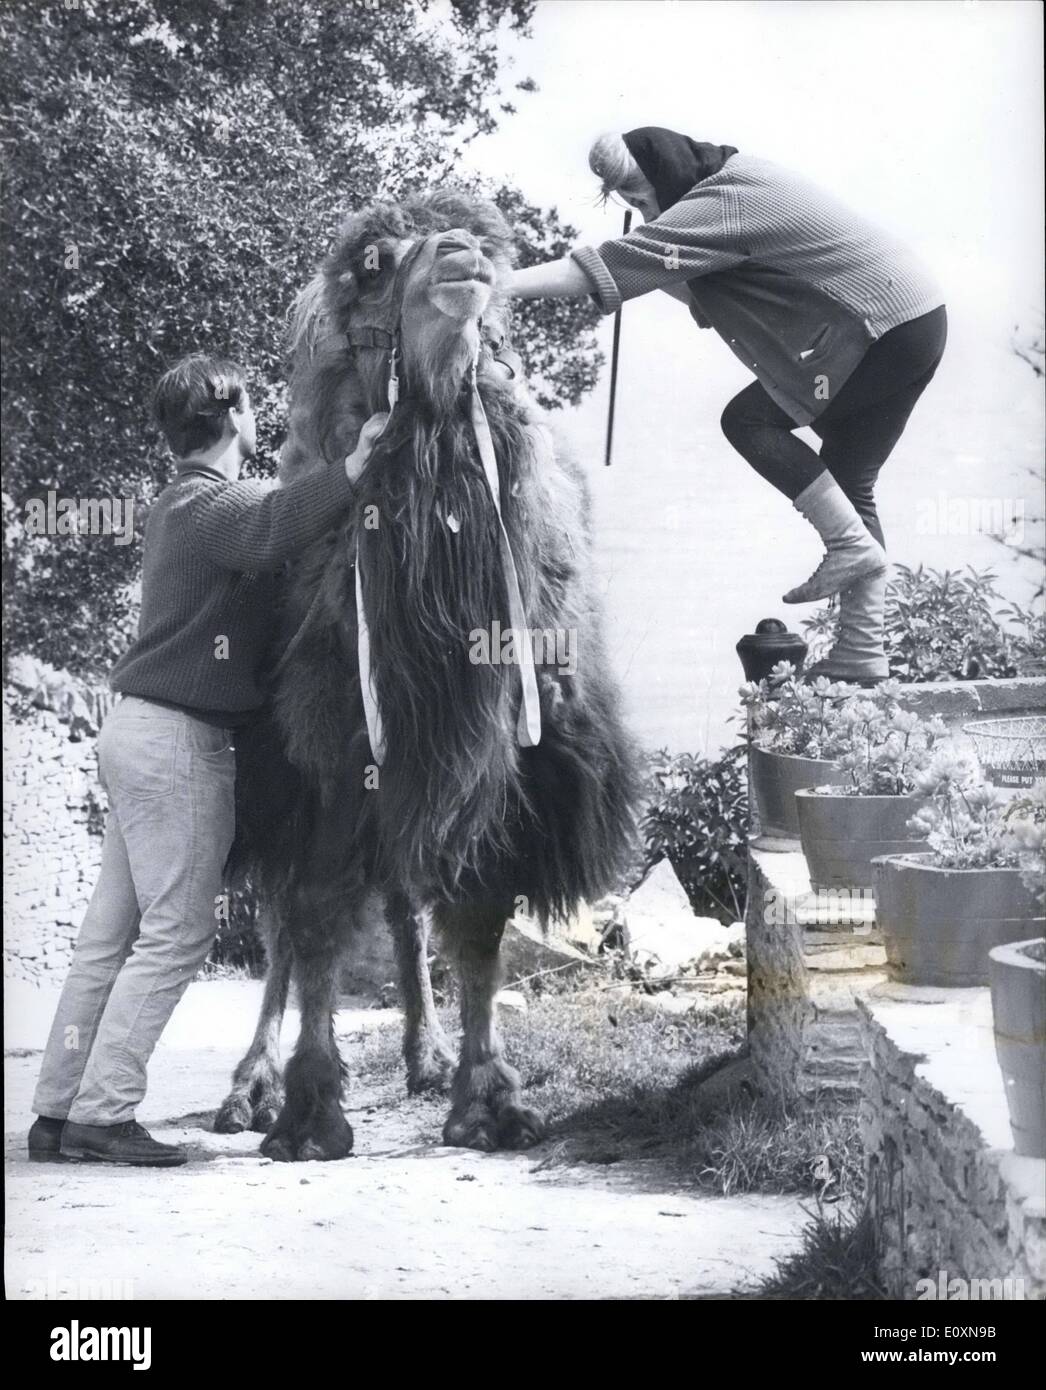 Juin 06, 1967 - le chameau Achmad est un résident à la populaire Tilly whim inn dans le Dorset : Achmad, un bestrian camel du Tibet, est la dernière arrivée au Tilly whim Inn à Swanage, Dorset, et se révèle déjà un résident populaires .Il est toujours prêt à aider avec le travail lourd, sans fin prêts à donner à des enfants, et content de l'hébergement simple fourni pour lui dans l'arrière-cour. Mais il existe des inconvénients à propos de Achmad. Pour bien qu'il ne fonctionne que pour sa subsistance, sa subsistance est assez coûteux quitte en dehors de la 00 le coût Mme Banque D'Images